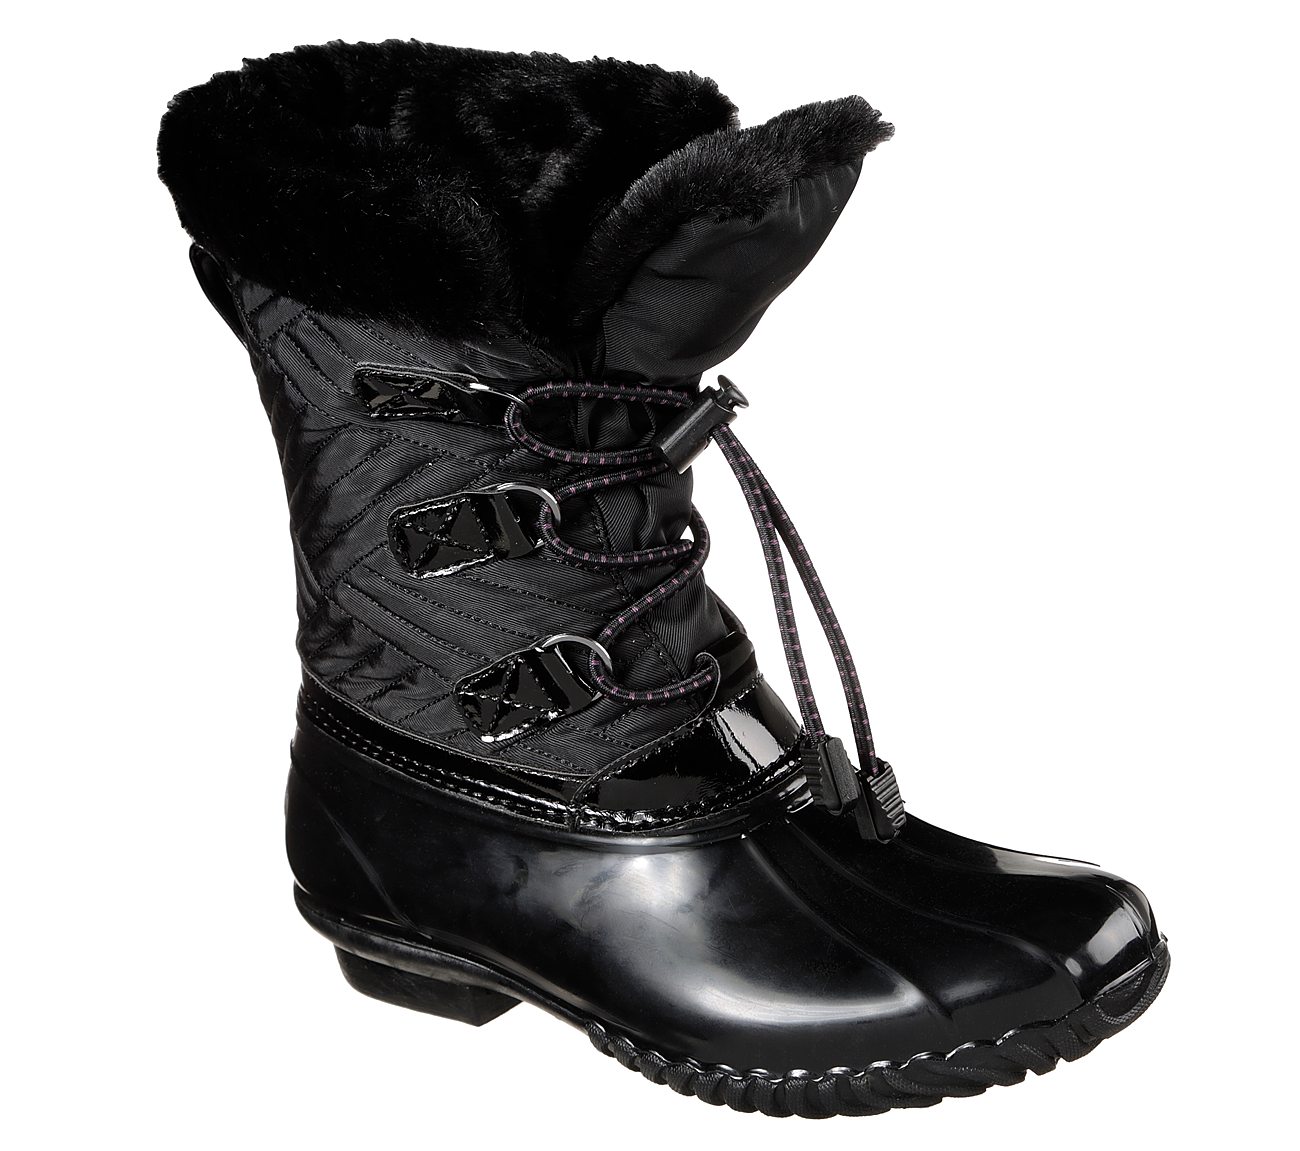 skechers women's hampshire winter boot